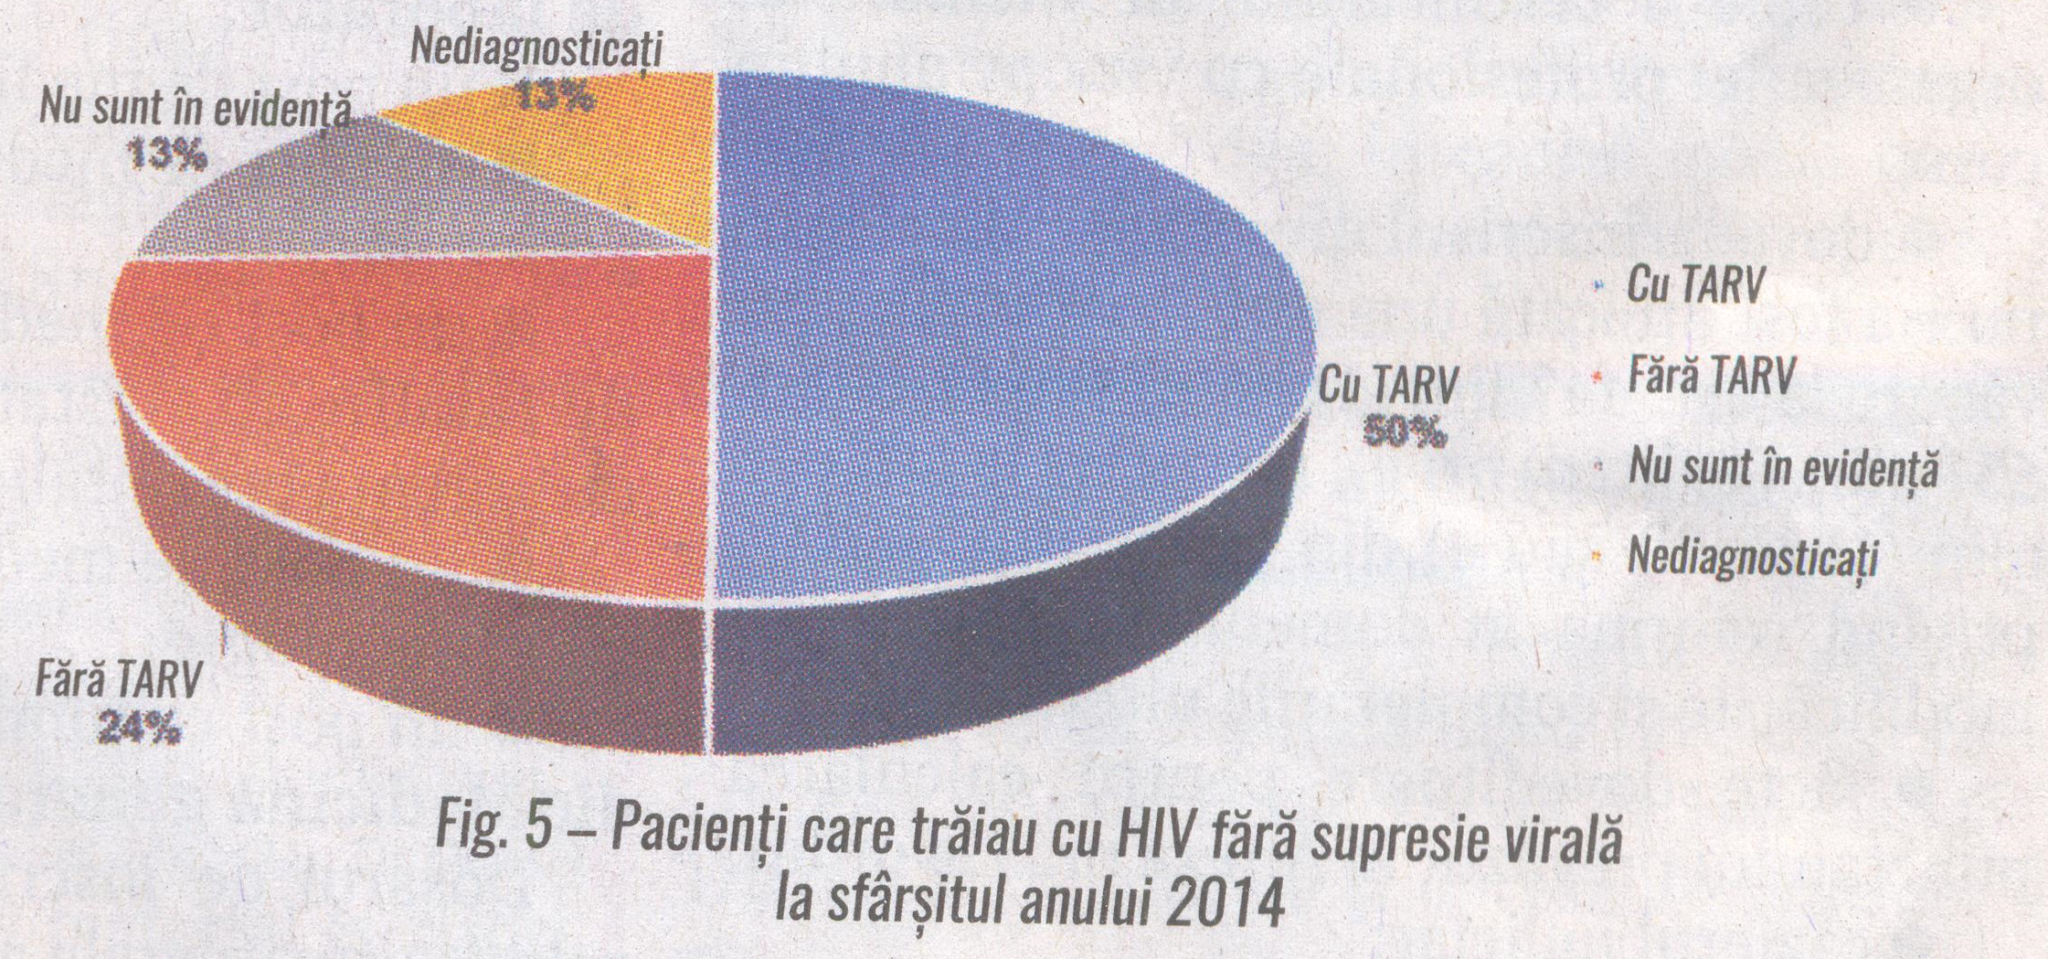 Fig. 5 Pacienti care traiau cu HIV fara supresie virala la sfarsitul anului 2014